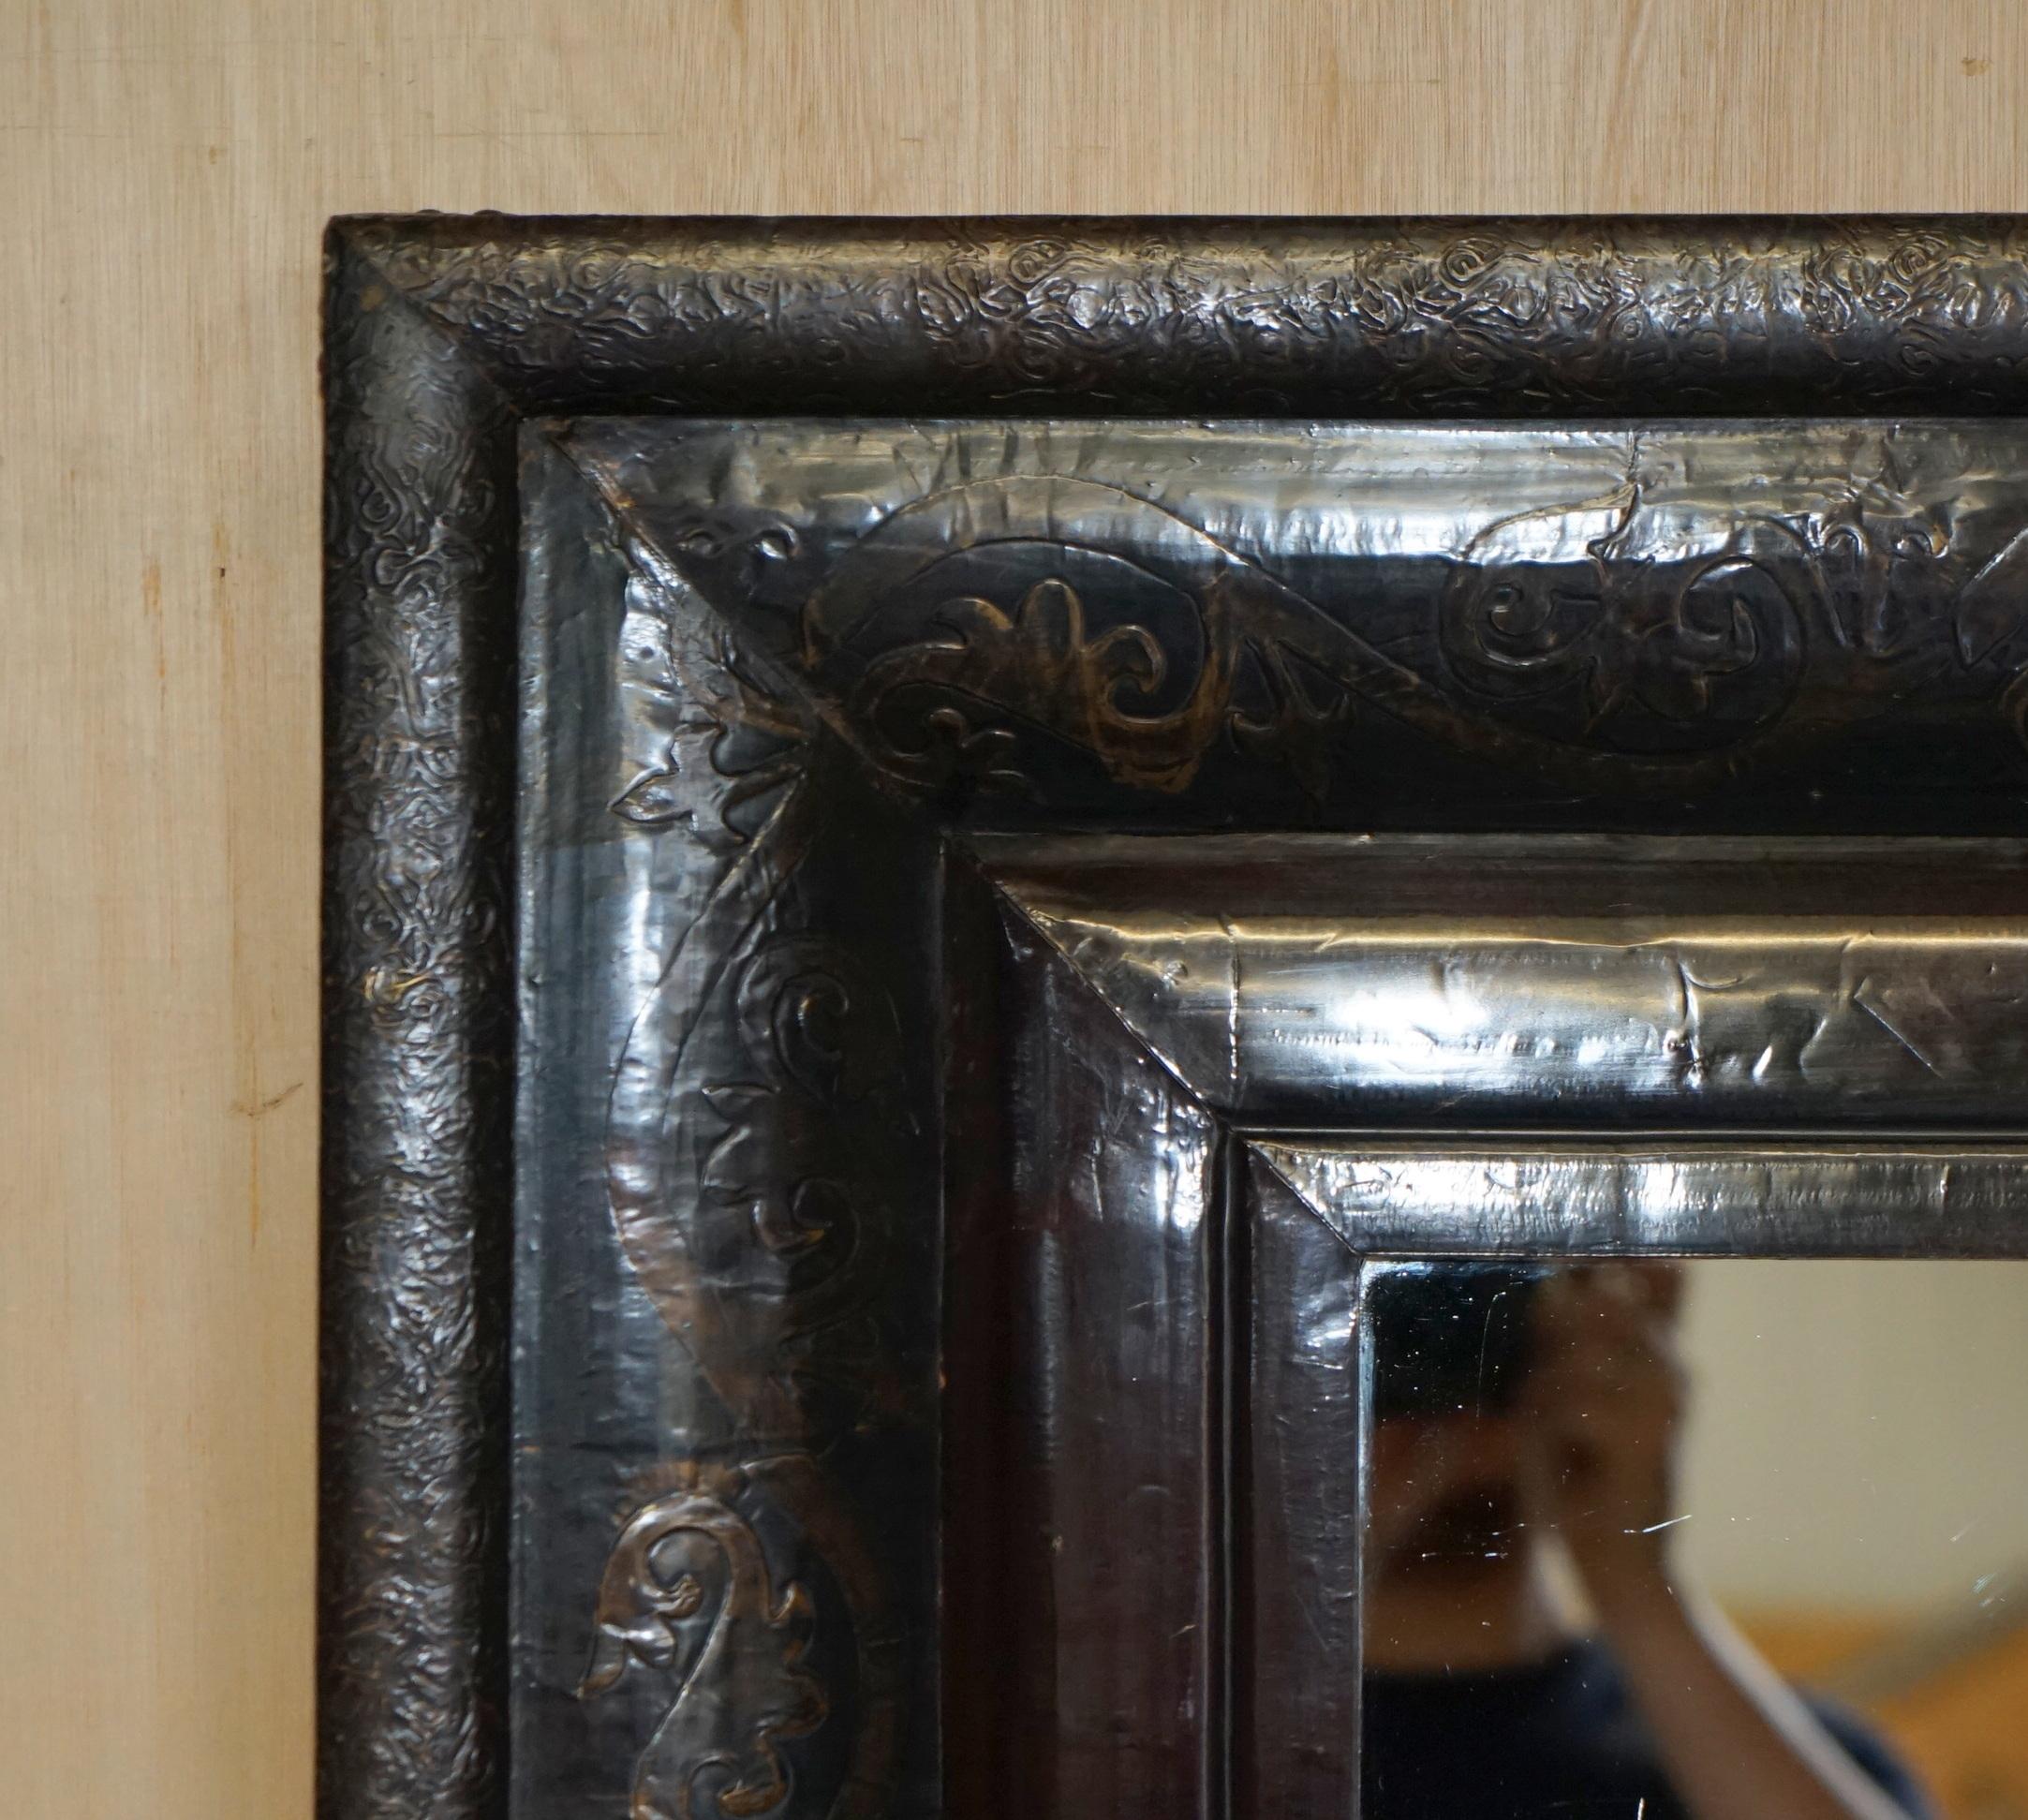 Royal House Antiques

Royal House Antiques ist erfreut, diese absolut exquisite Vintage bronzierten Rahmen Repoussé Metall über Mantel Wandspiegel zum Verkauf anbieten

Bitte beachten Sie die Liefergebühr aufgeführt ist nur ein Leitfaden, es deckt